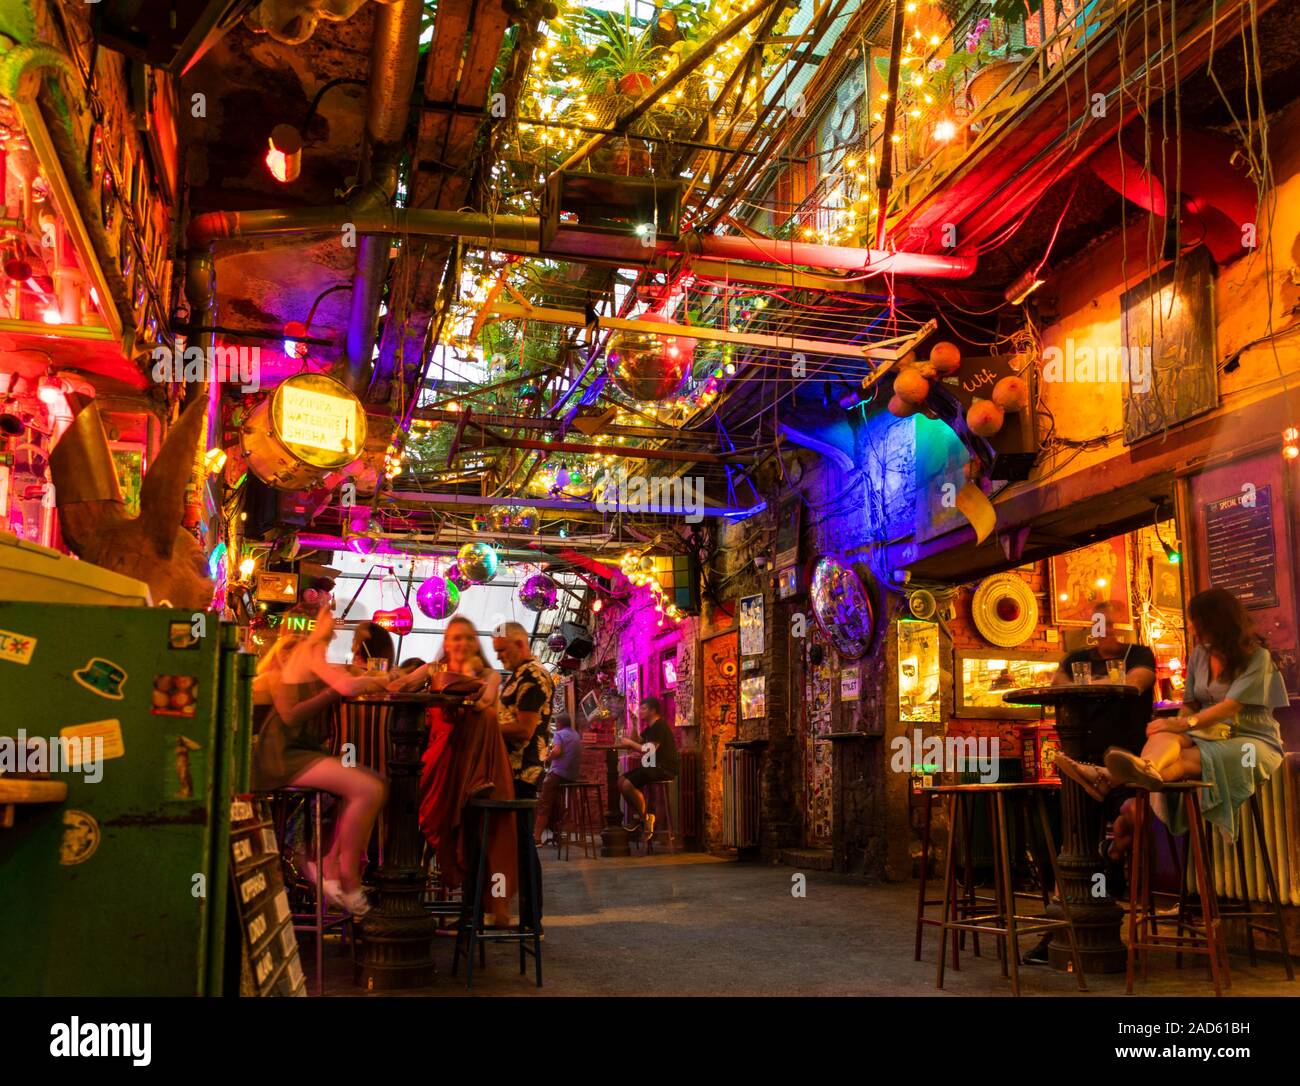 Budapest, Ungarn / Europa; 03/07/2019: Innenraum der Szimpla Kert bei Nacht, der berühmteste Ruine Pub in Budapest, Ungarn Stockfoto